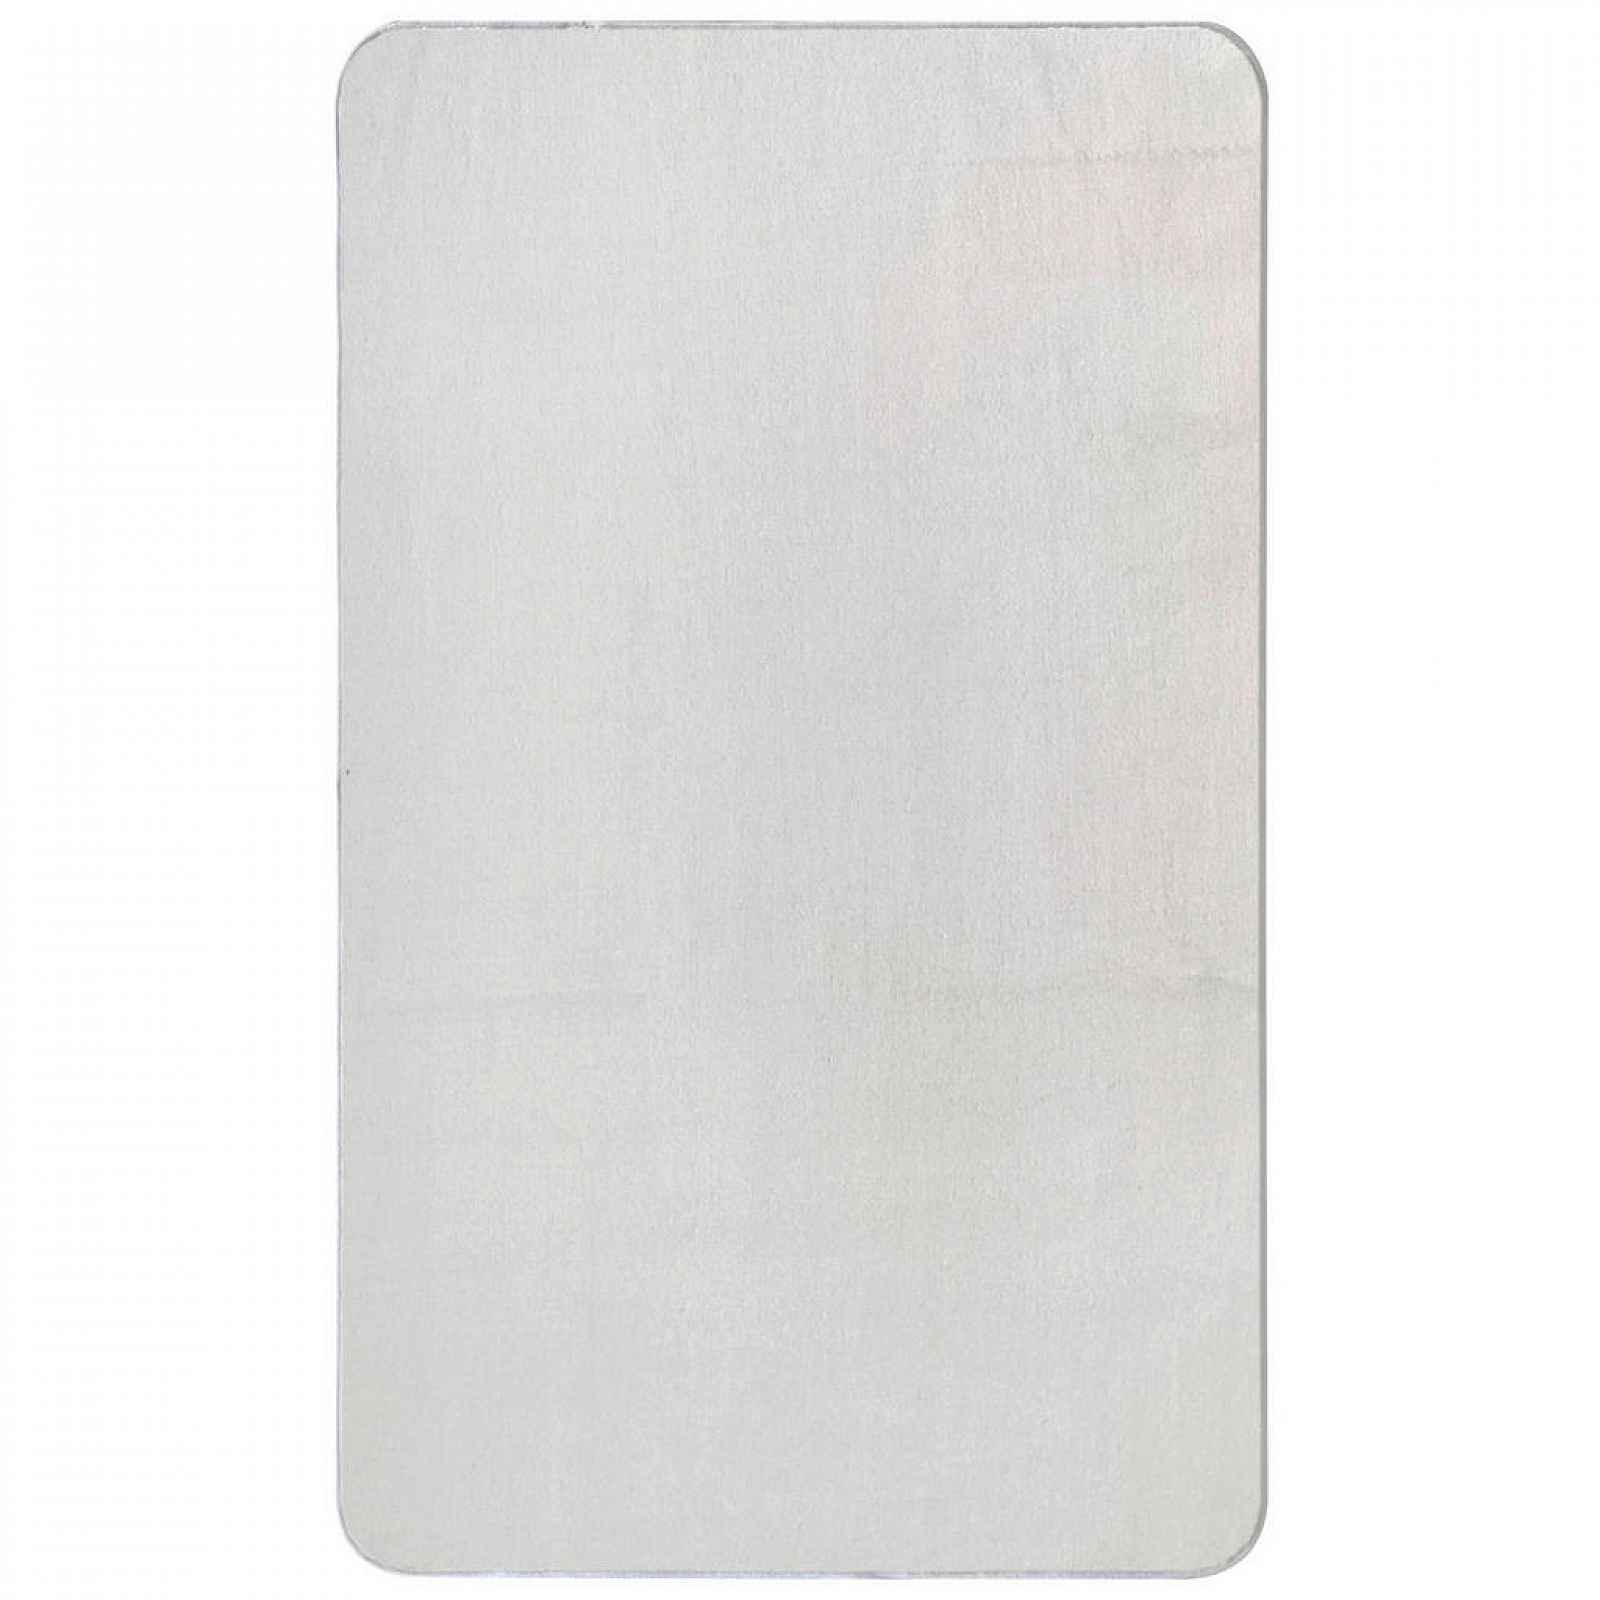 Boxxx KOBEREC, 60/100 cm, bílá, pískové barvy - Tkané koberce - 008104015501